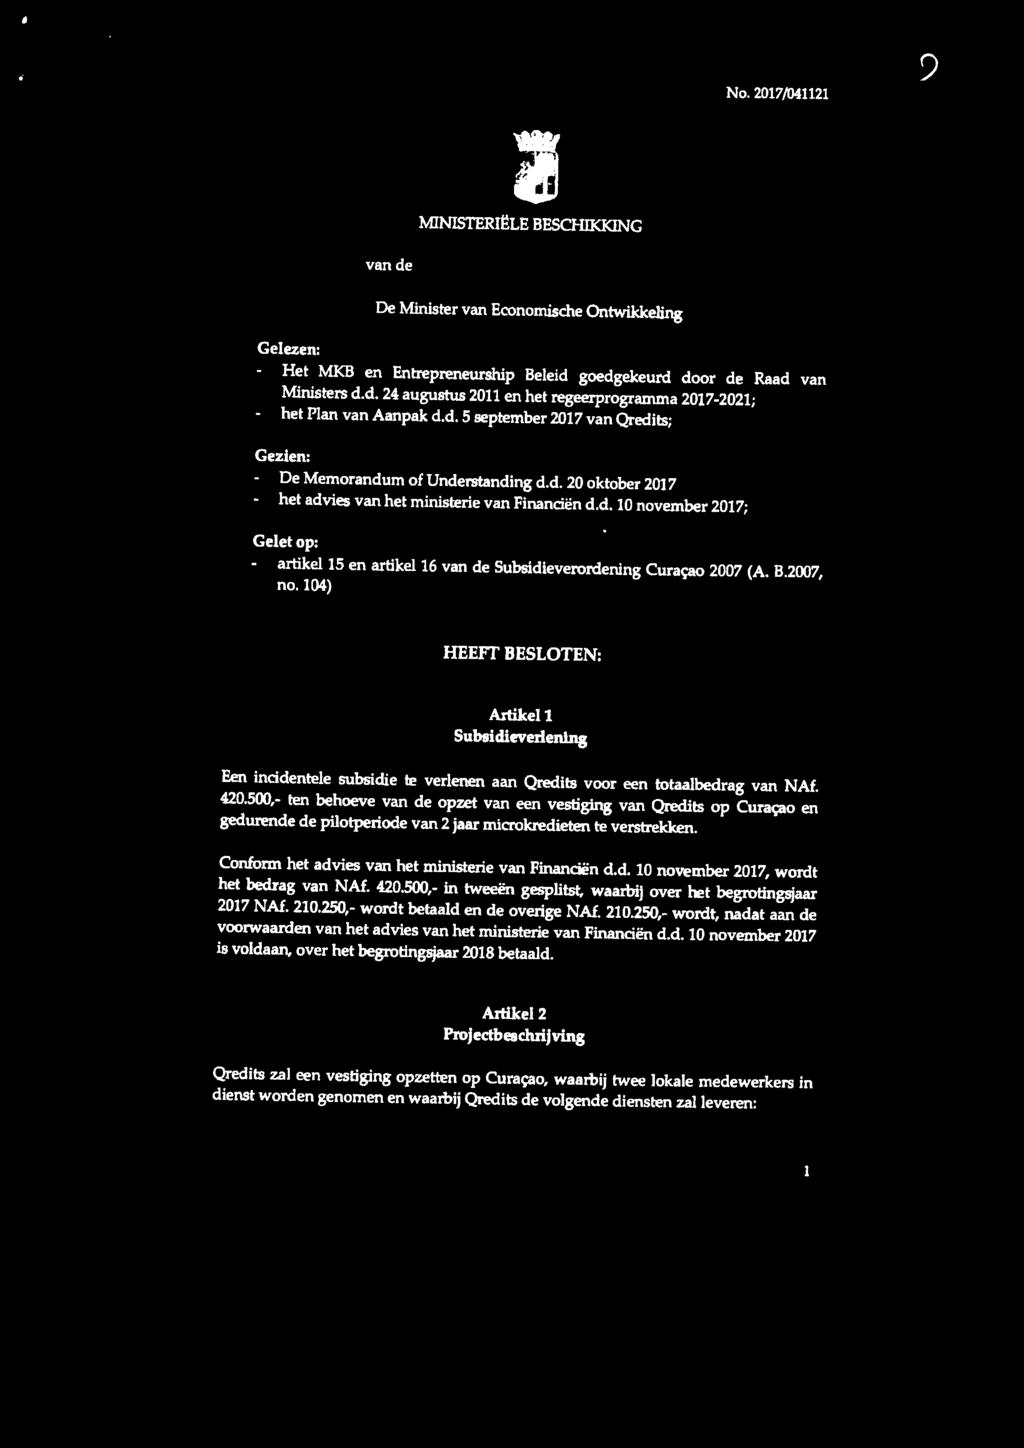 B.2007, no. 104) HEEFI' BESLOTEN: Artikel 1 Subsidieverlening Een incidentele subsidie te verlenen aan Qredits voor een totaalbedrag van NAf. 420.500,- ten behoeve van de op.